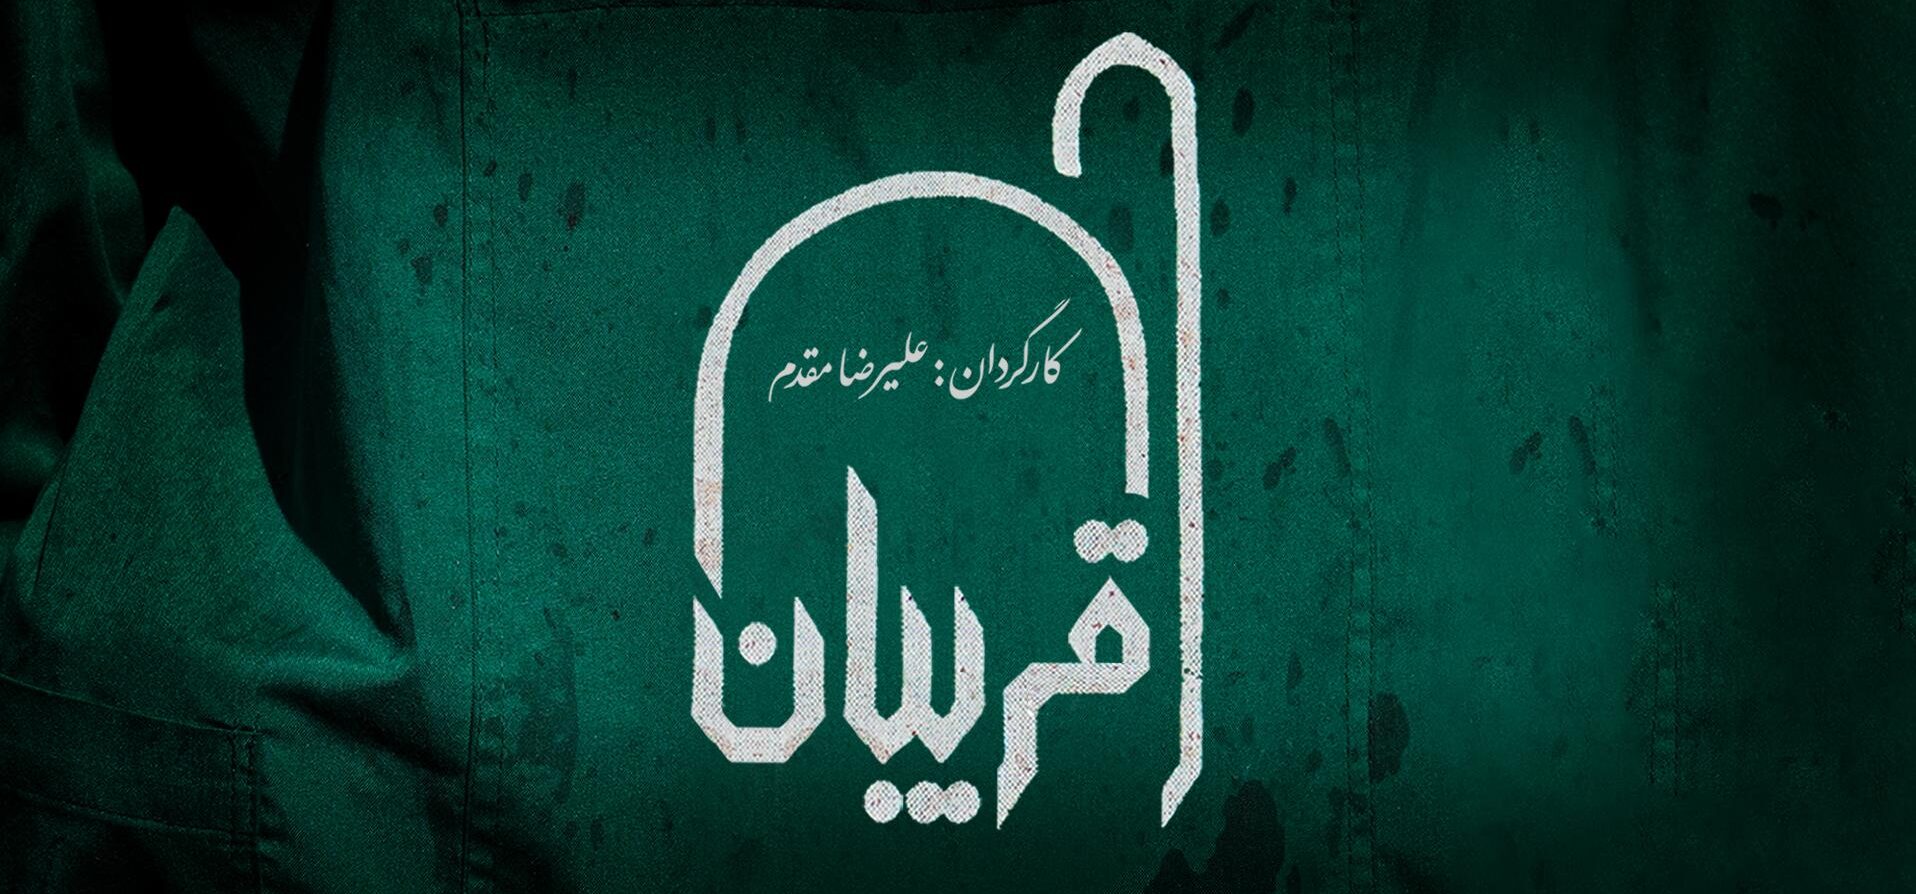 مستند قریبان منتشر شد | توزیع قربانی های حسینیه اعظم زنجان